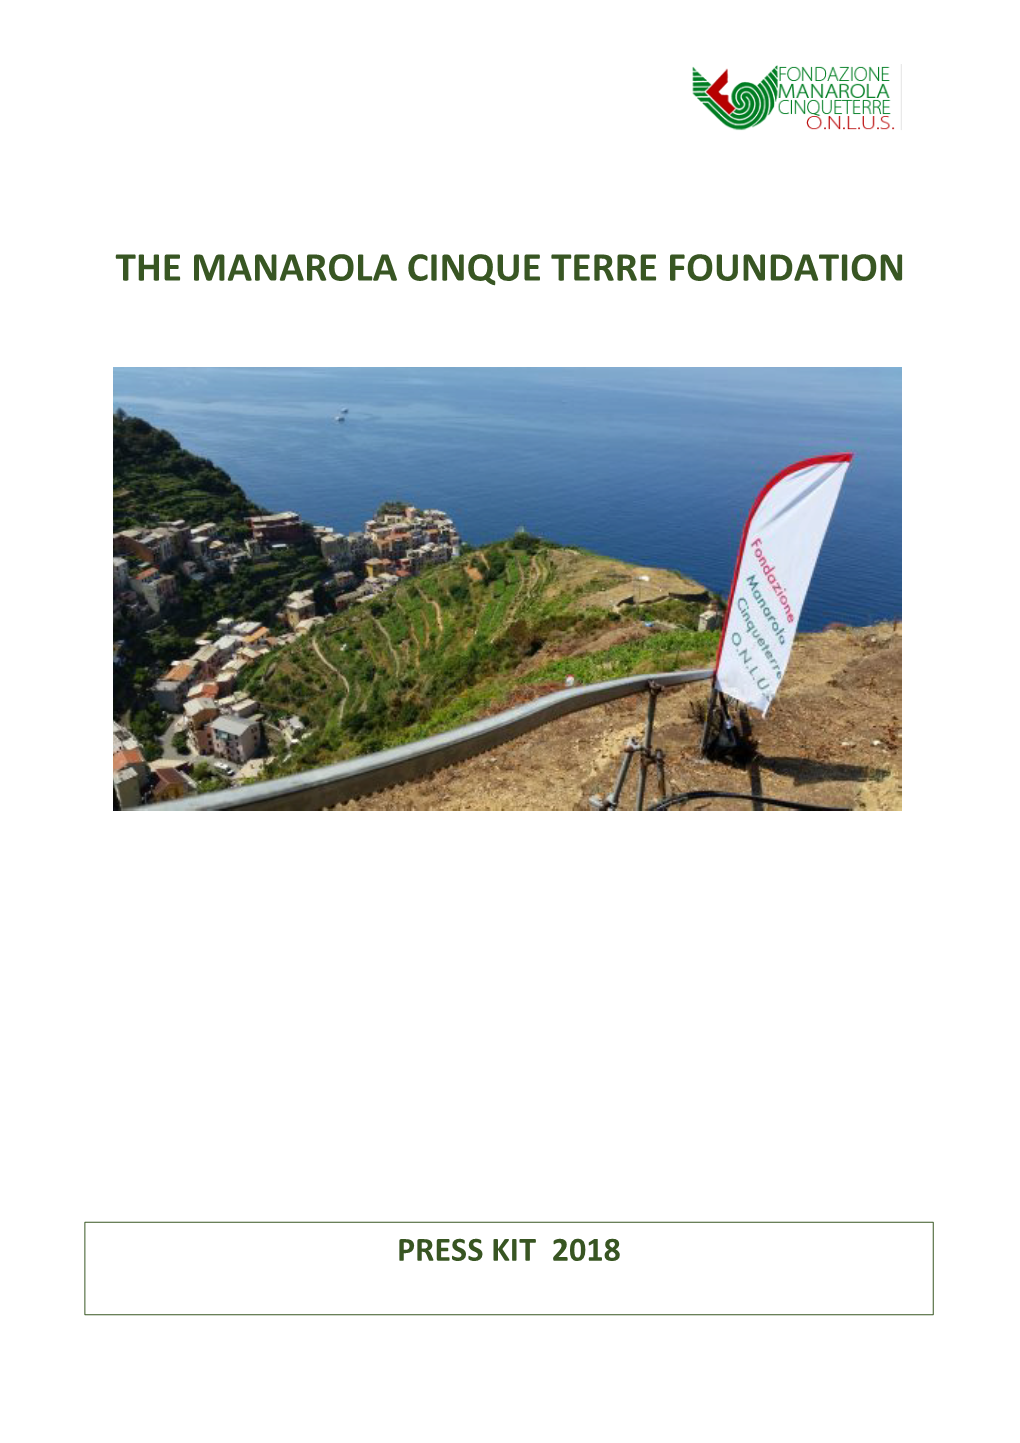 The Manarola Cinque Terre Foundation